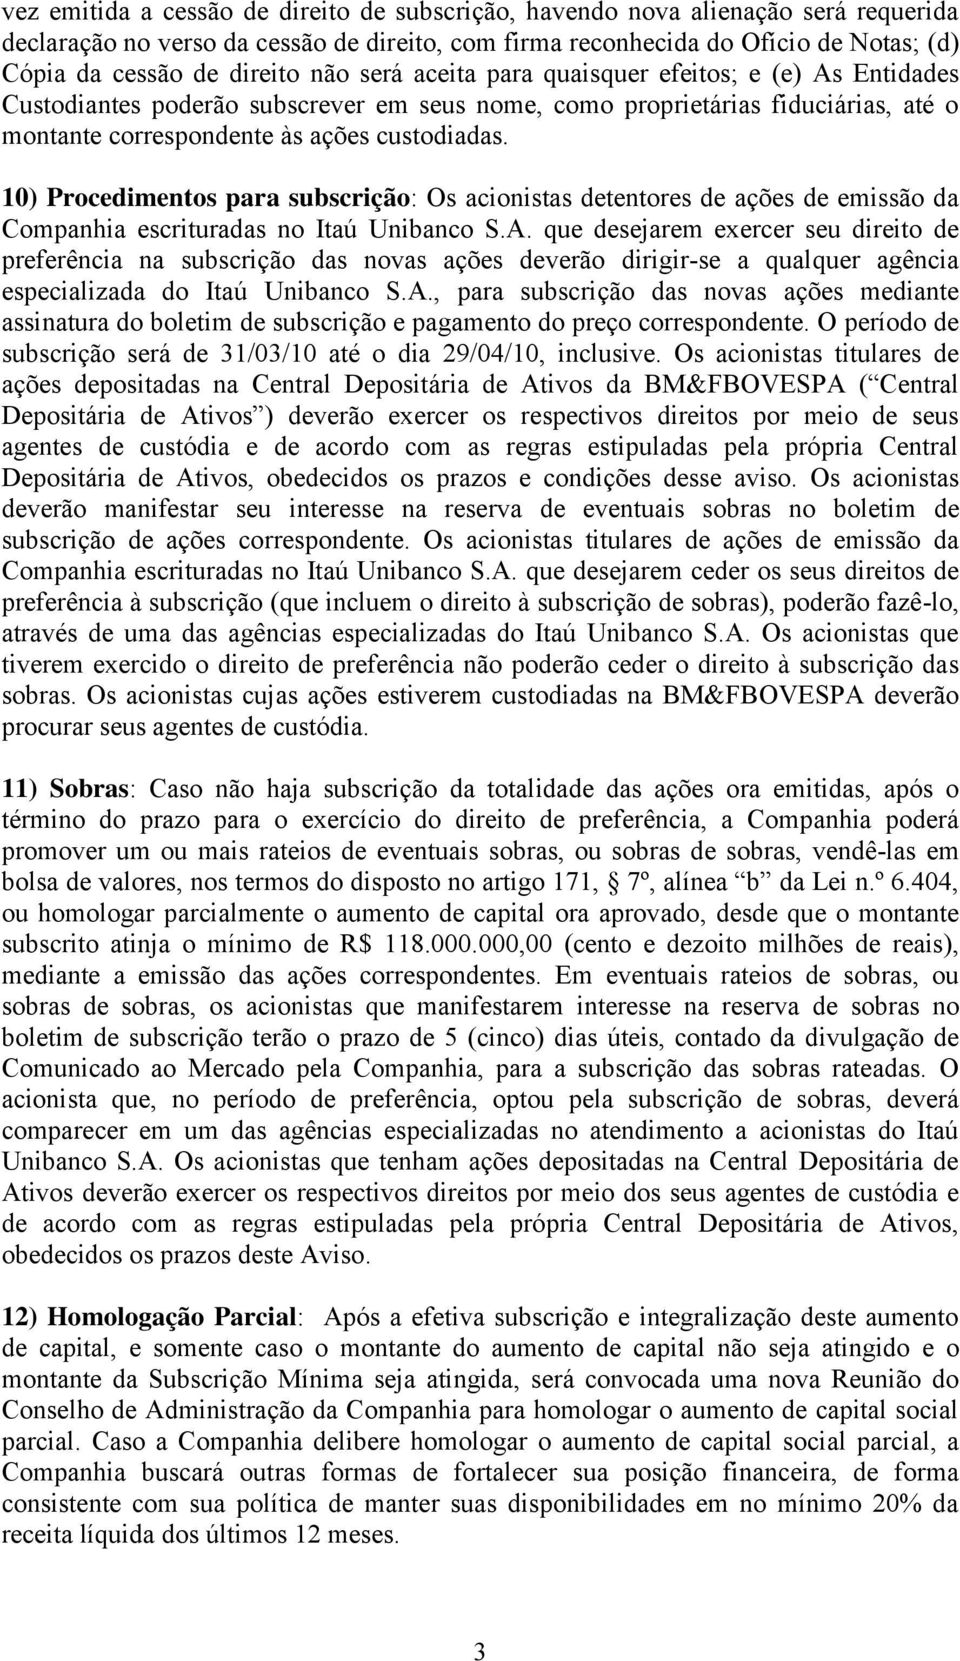 10) Procedimentos para subscrição: Os acionistas detentores de ações de emissão da Companhia escrituradas no Itaú Unibanco S.A.